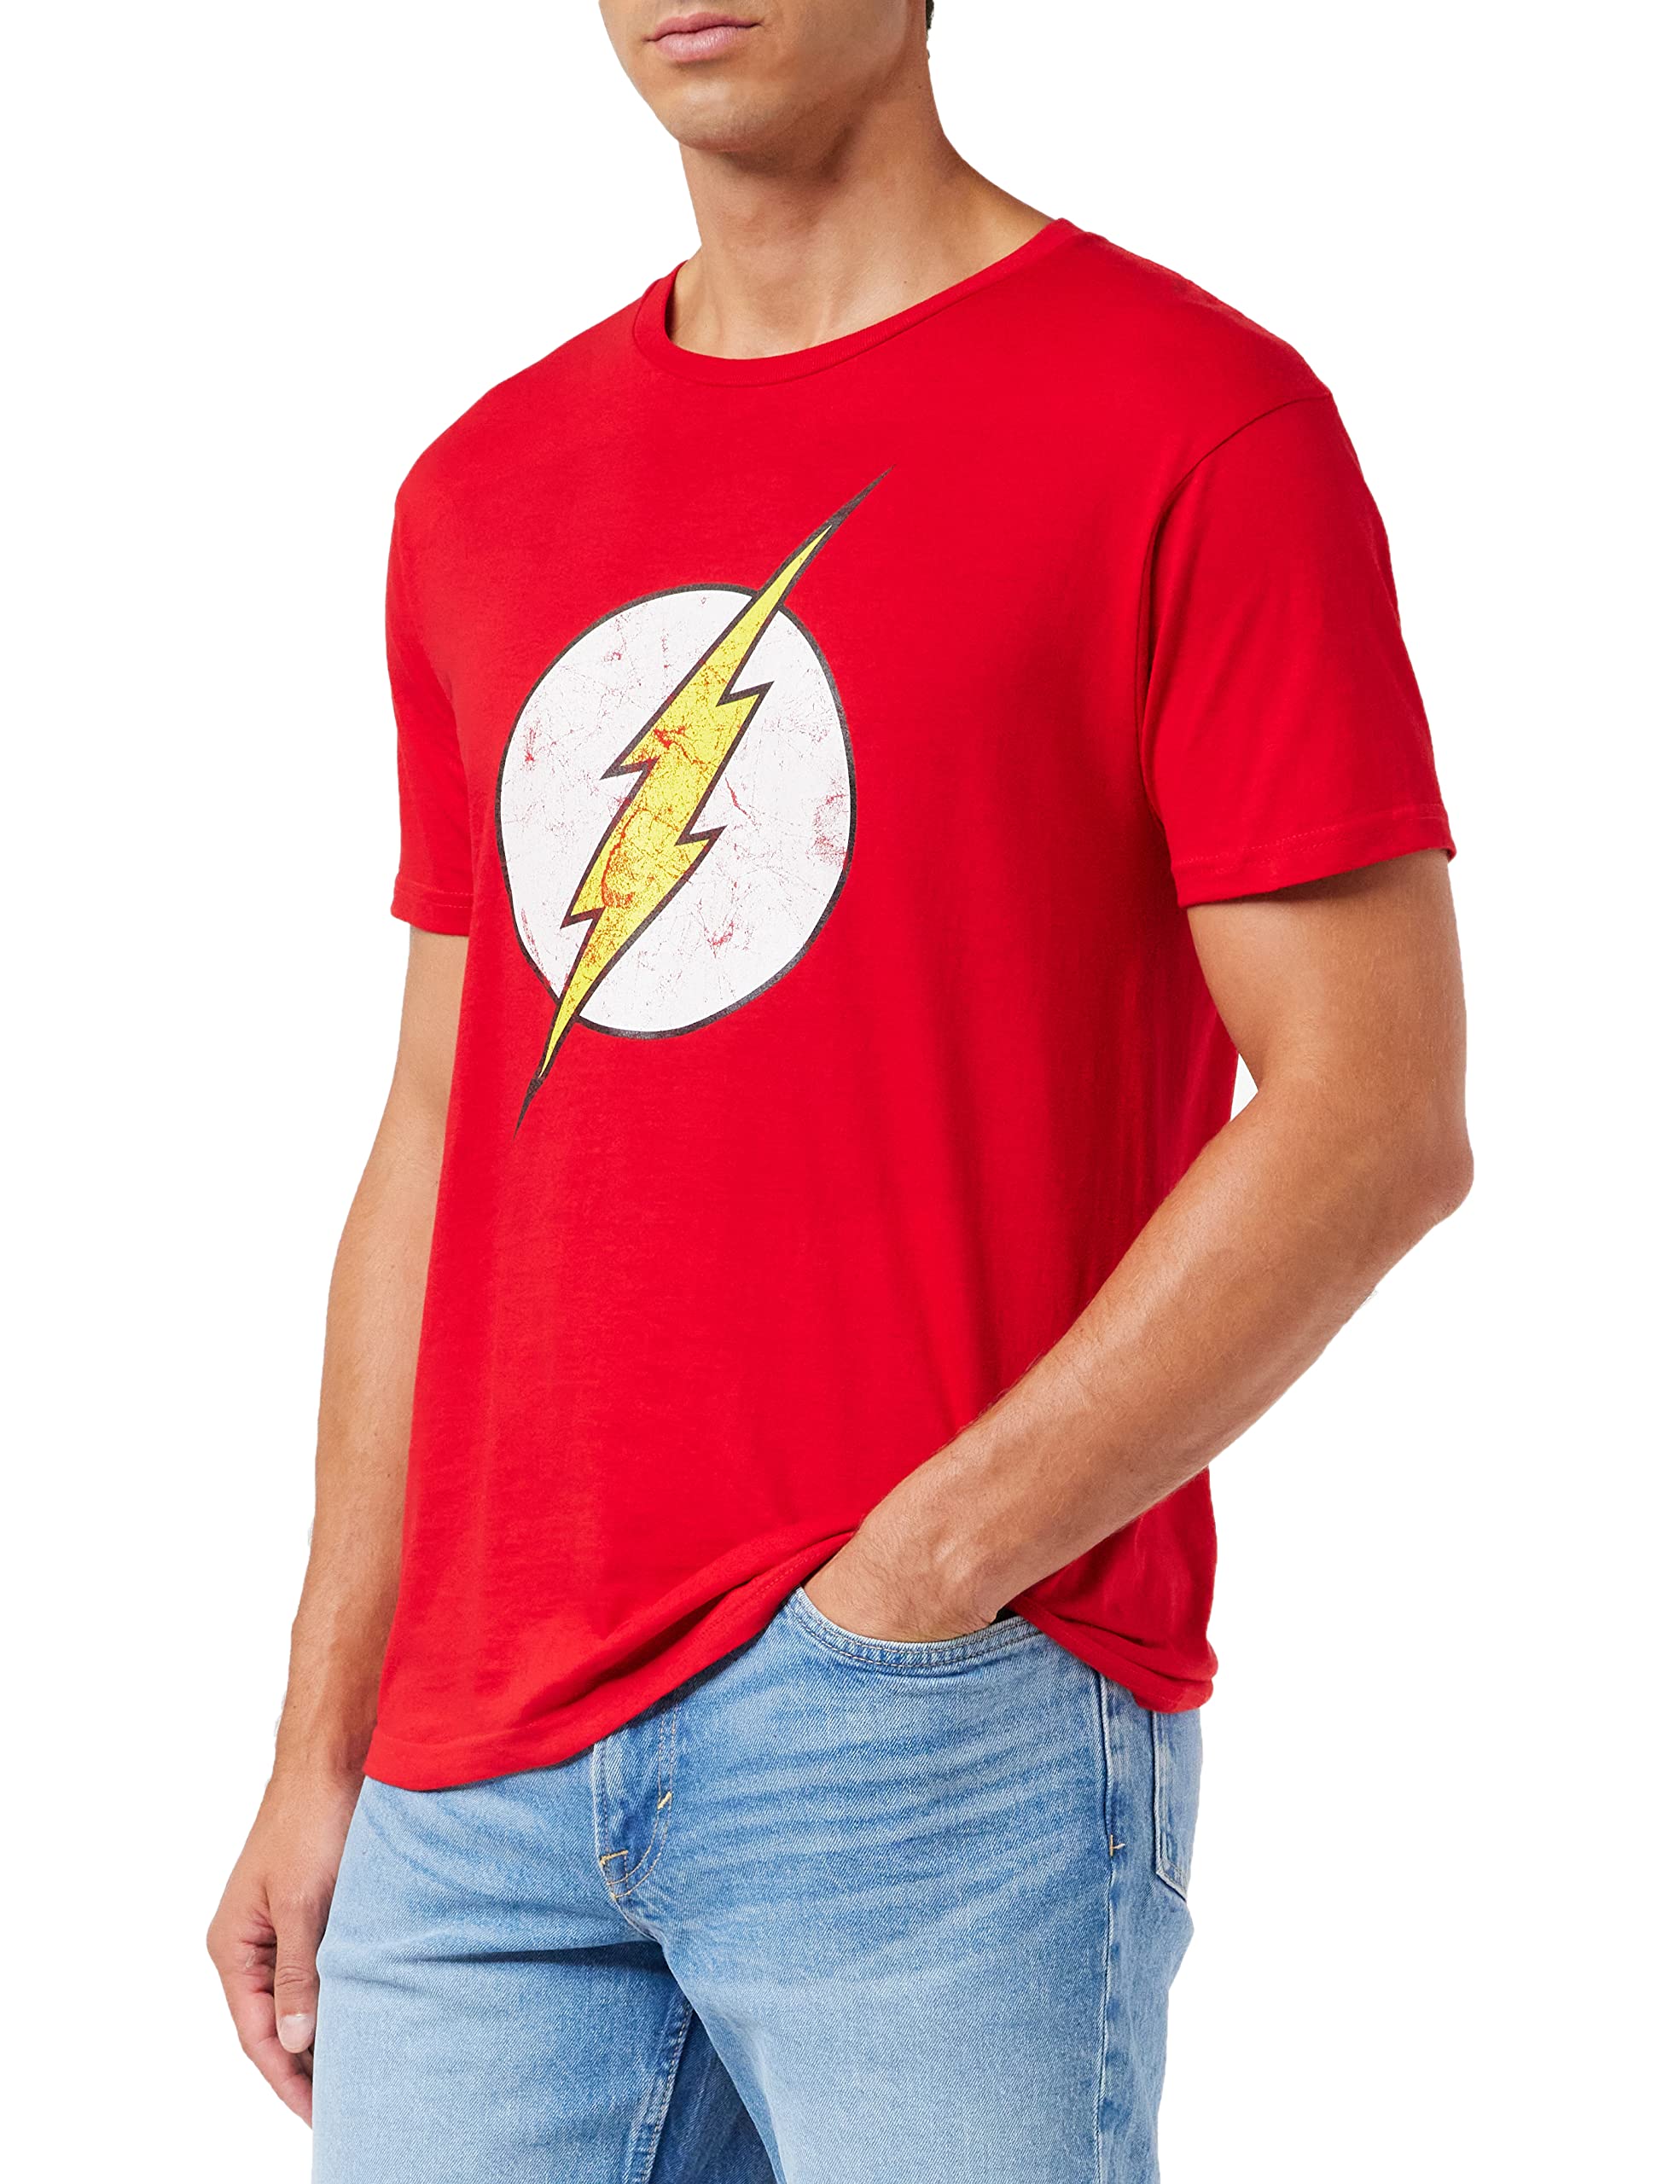 Flash Herren Logo T-Shirt, rot, X-Large